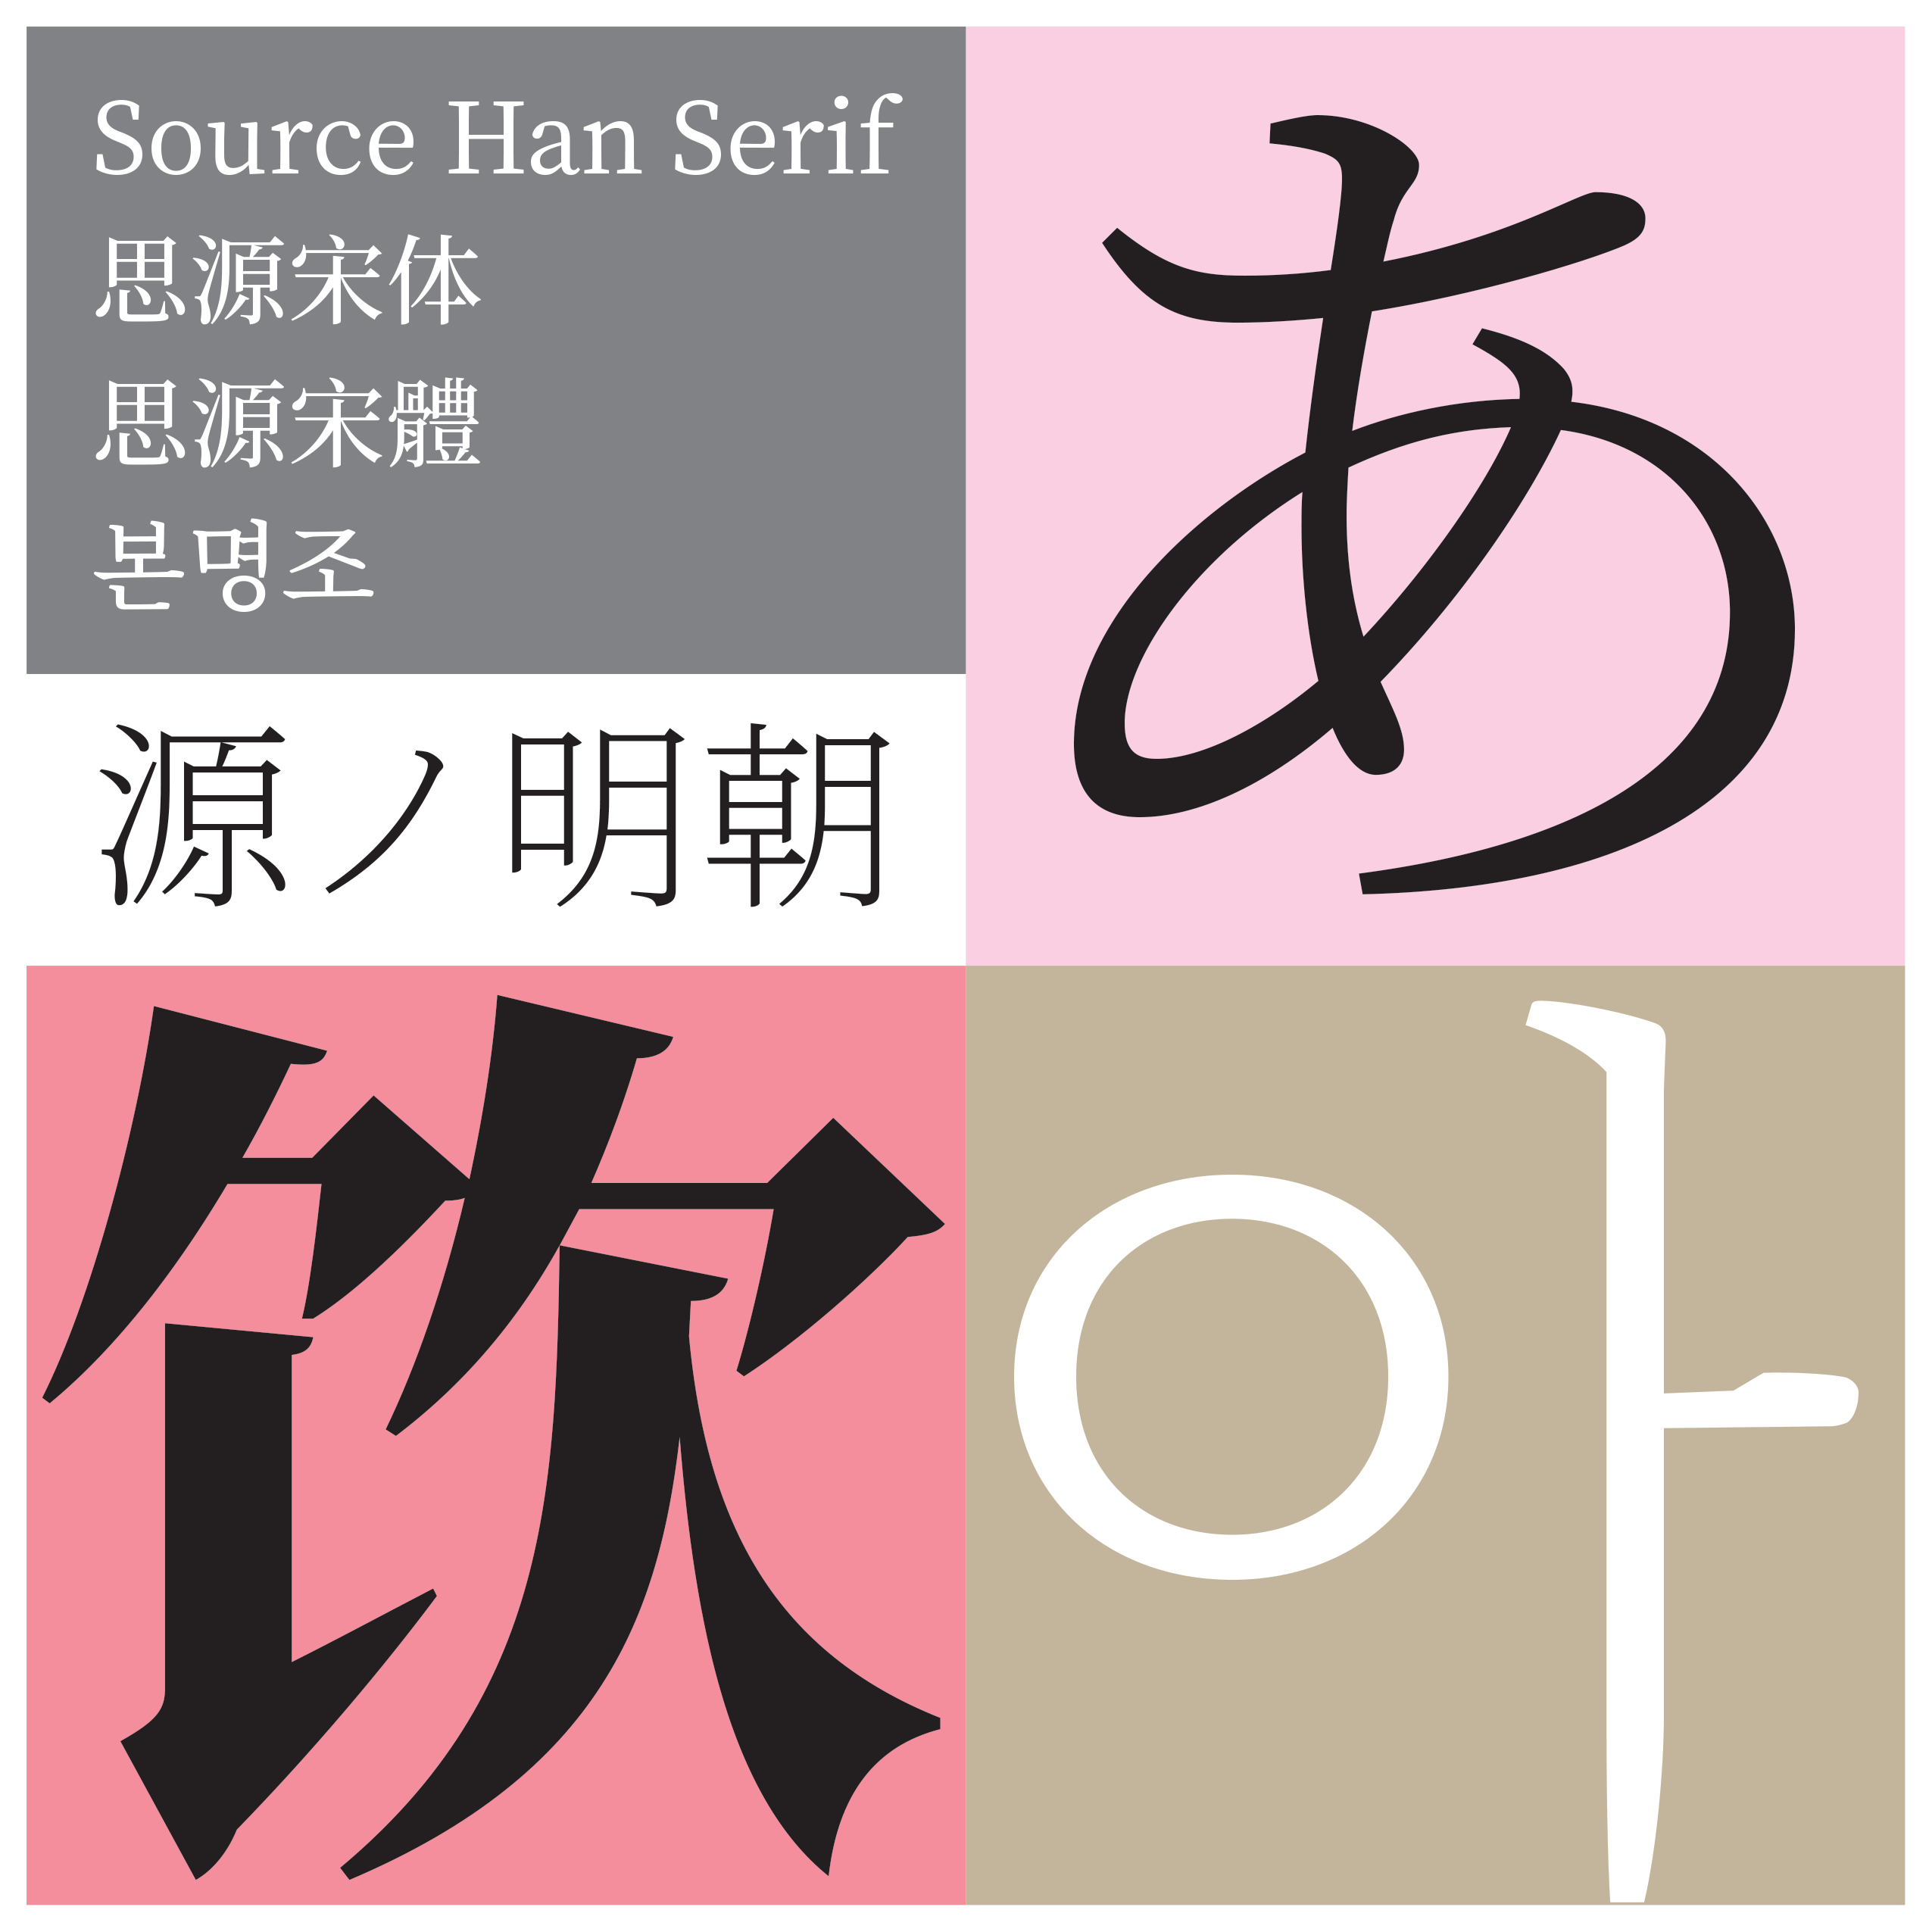 The Typekit Blog 新しいオープンソースの Pan Cjk 書体 源ノ明朝 Source Han Serif のご紹介